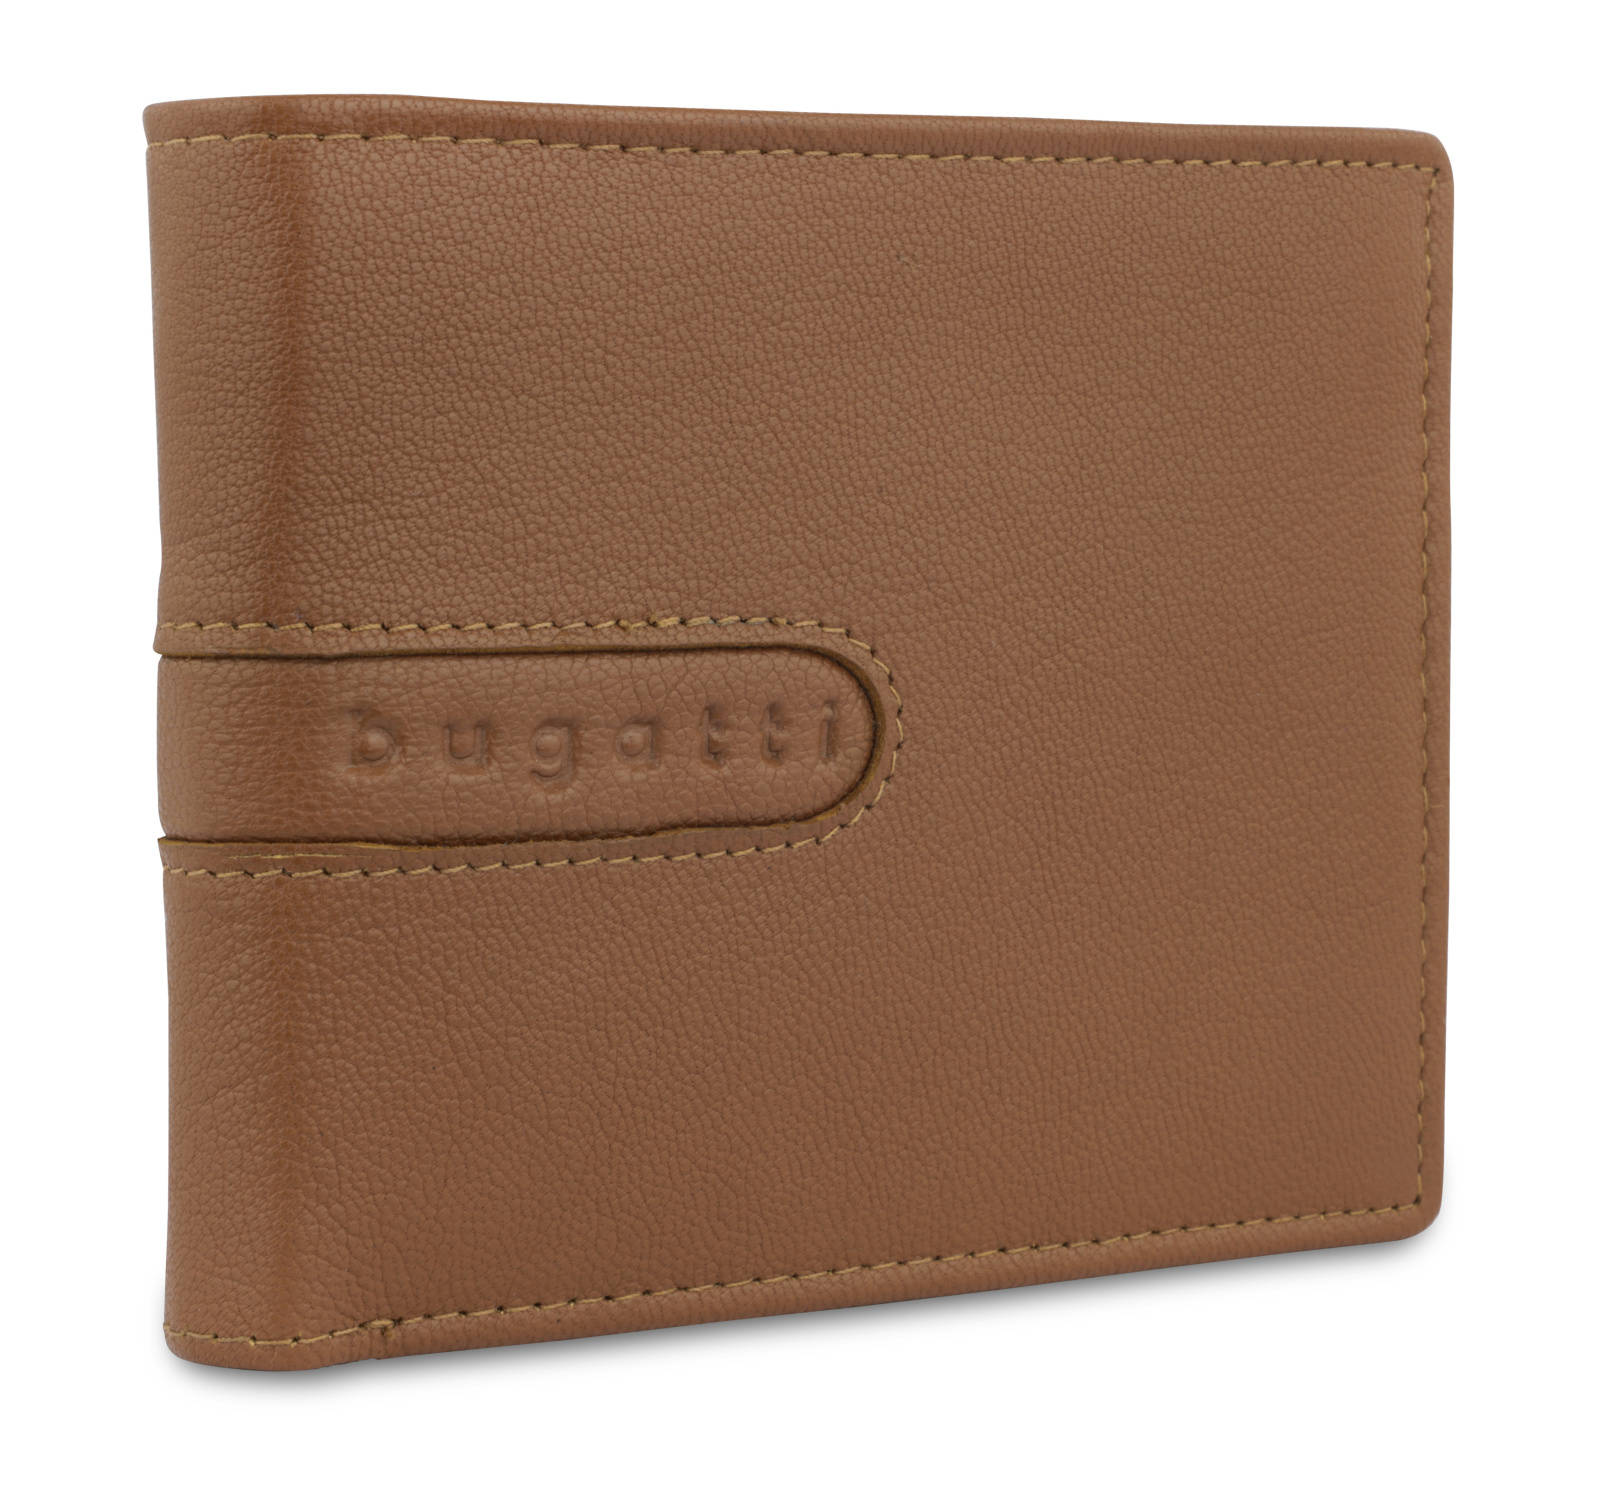 Pánská peněženka Bugatti Bomba button 491353-07 tabáková